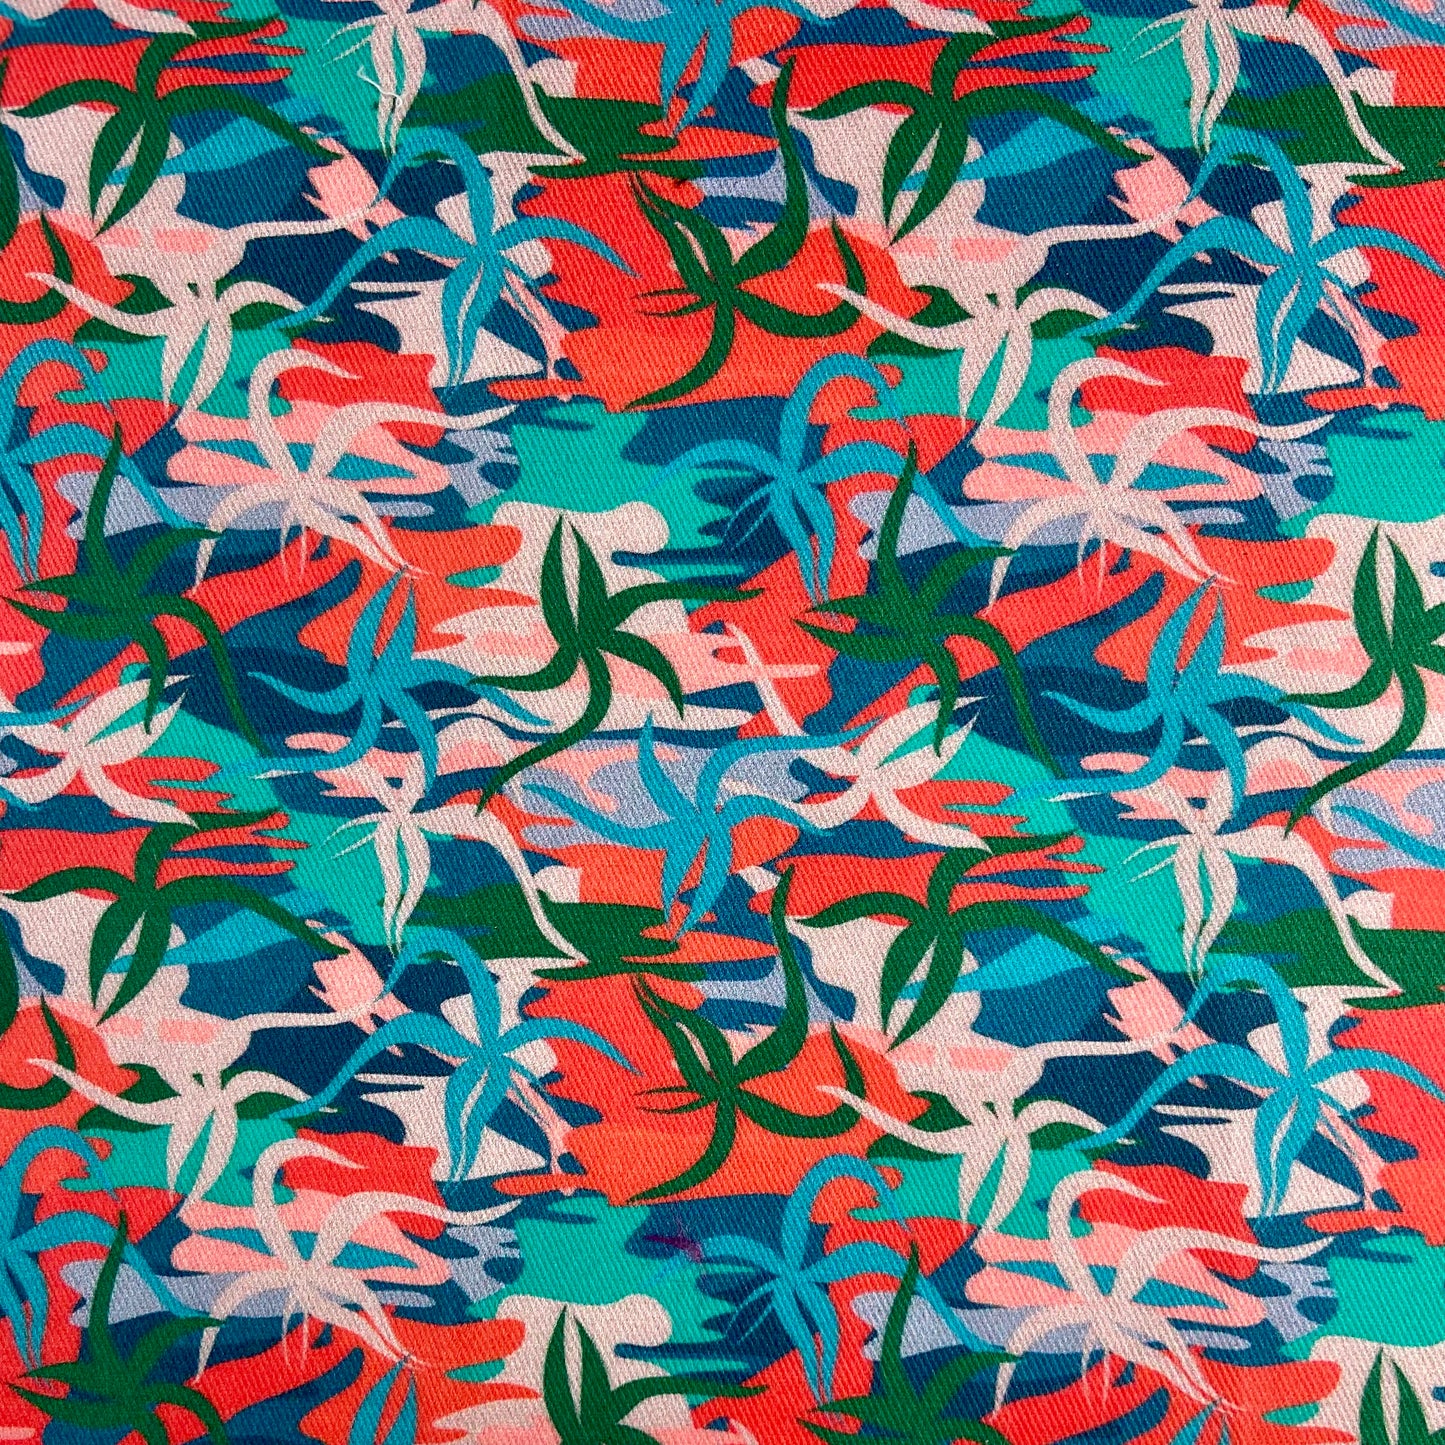 Sergé de coton imprimé motif jungle plantes tiges aloe vera lianes couleurs vives turquoise vert bleu corail orange rose saumon multicolore 